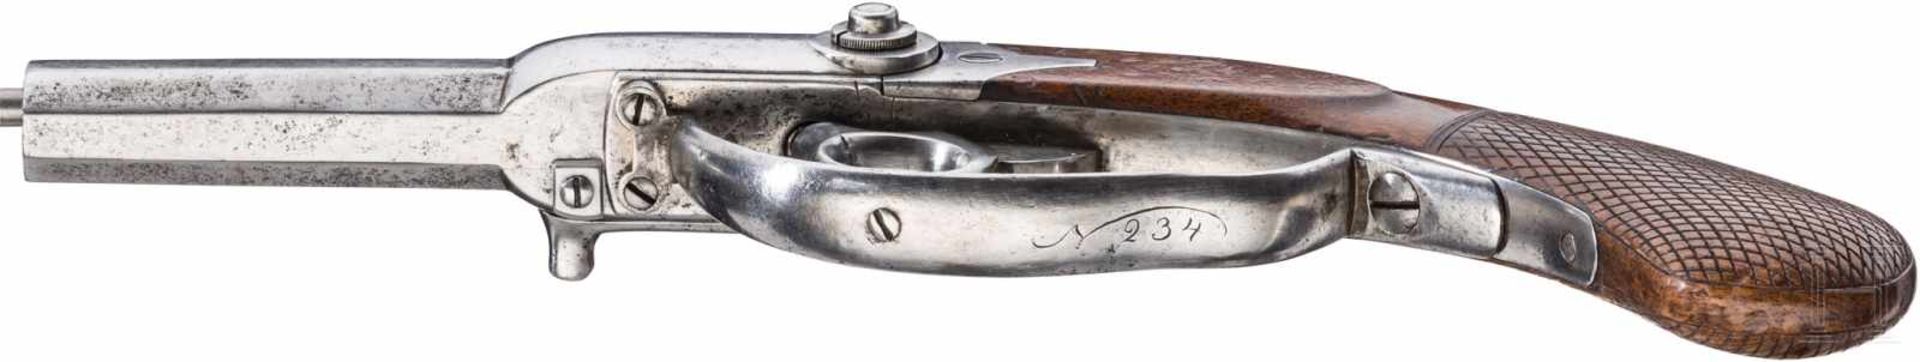 Löbnitz-Pistole M 1841Achtkantiger Lauf mit sechsfach gezogener Seele im Kaliber 12 mm. - Bild 3 aus 4